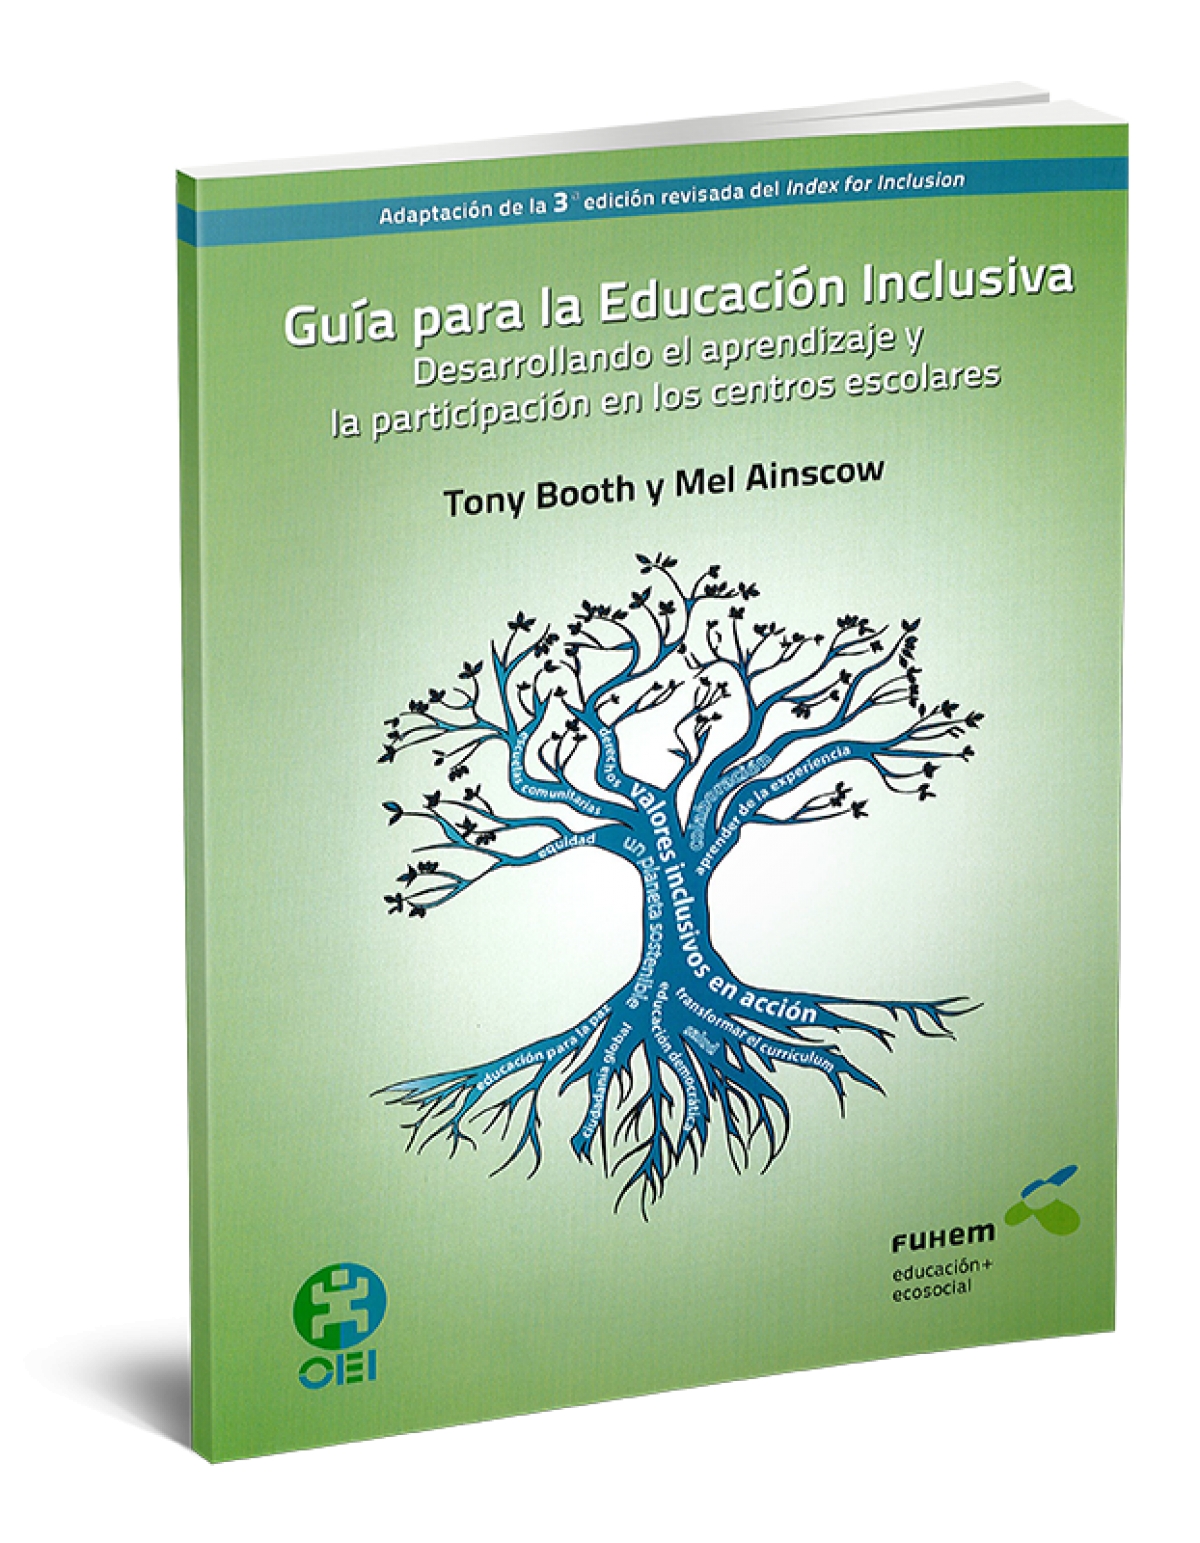 Guía para la Educación Inclusiva: Desarrollando el aprendizaje y la participación en los centros escolares